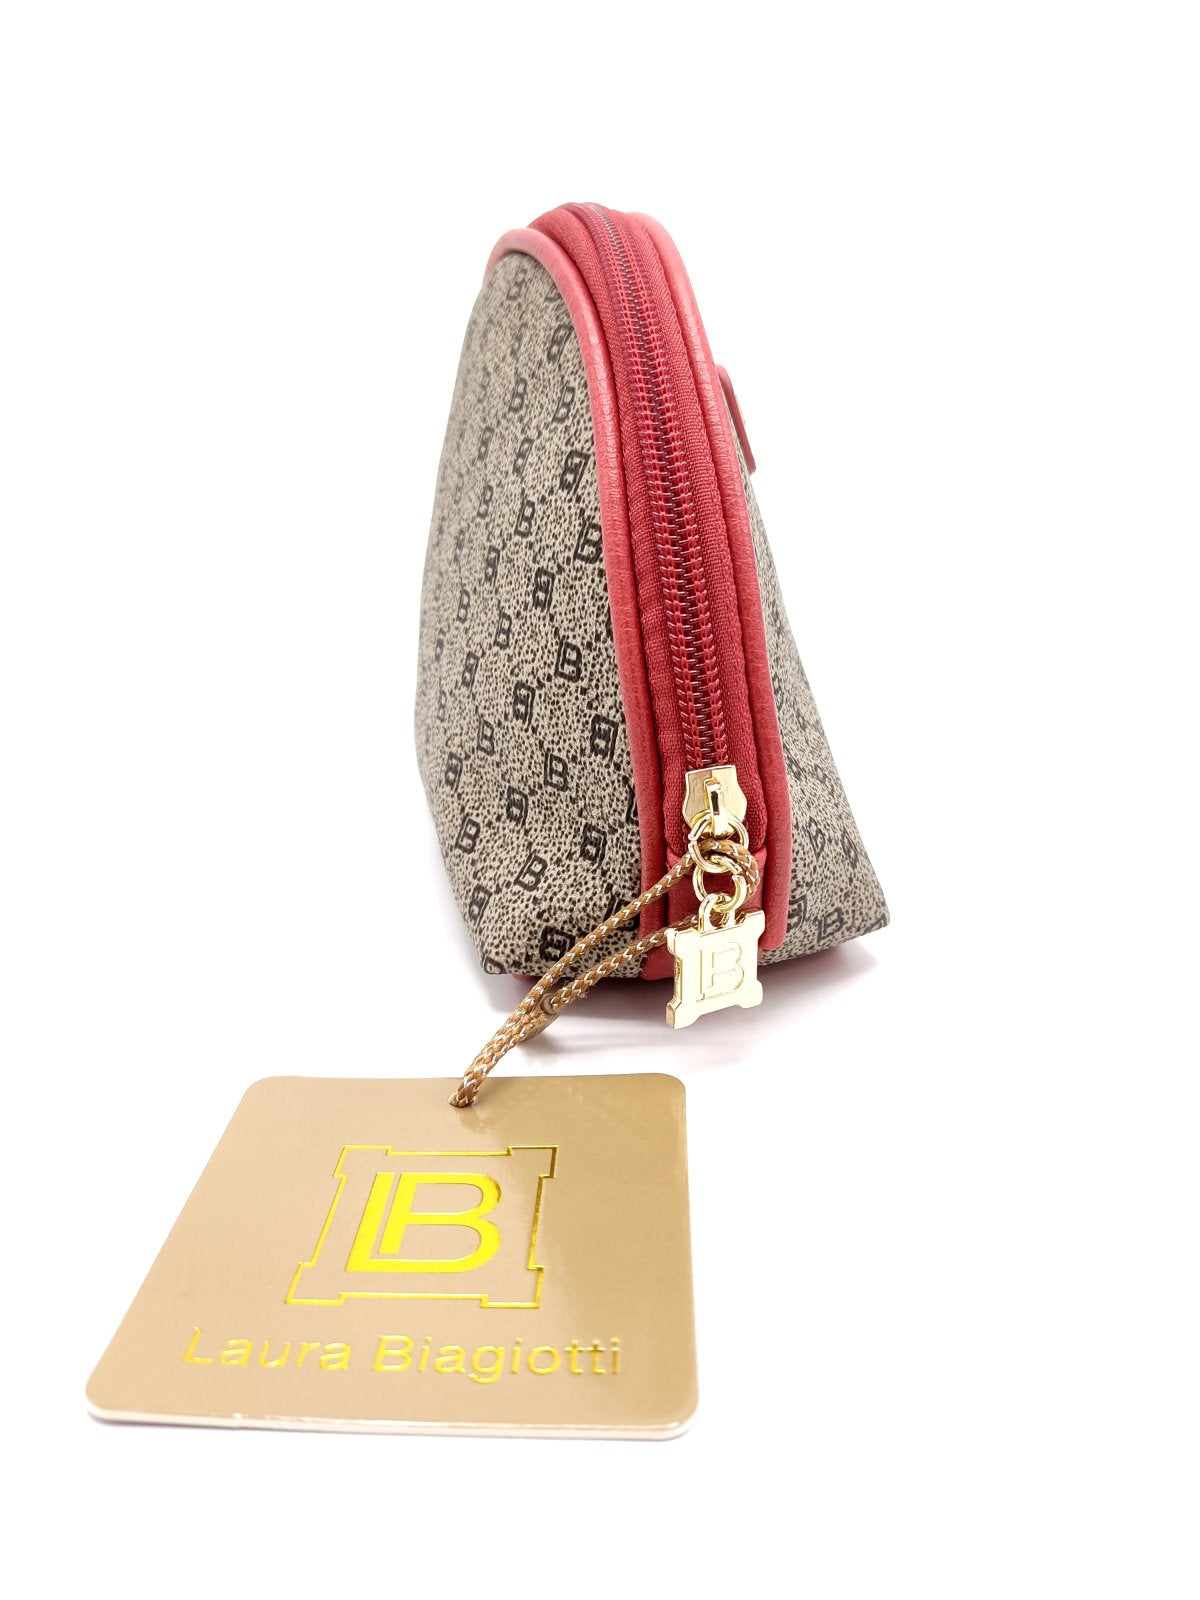 Marca Laura Biagiotti, borsa di bellezza stampata in ecopelle, made in China, art.  LB125-9